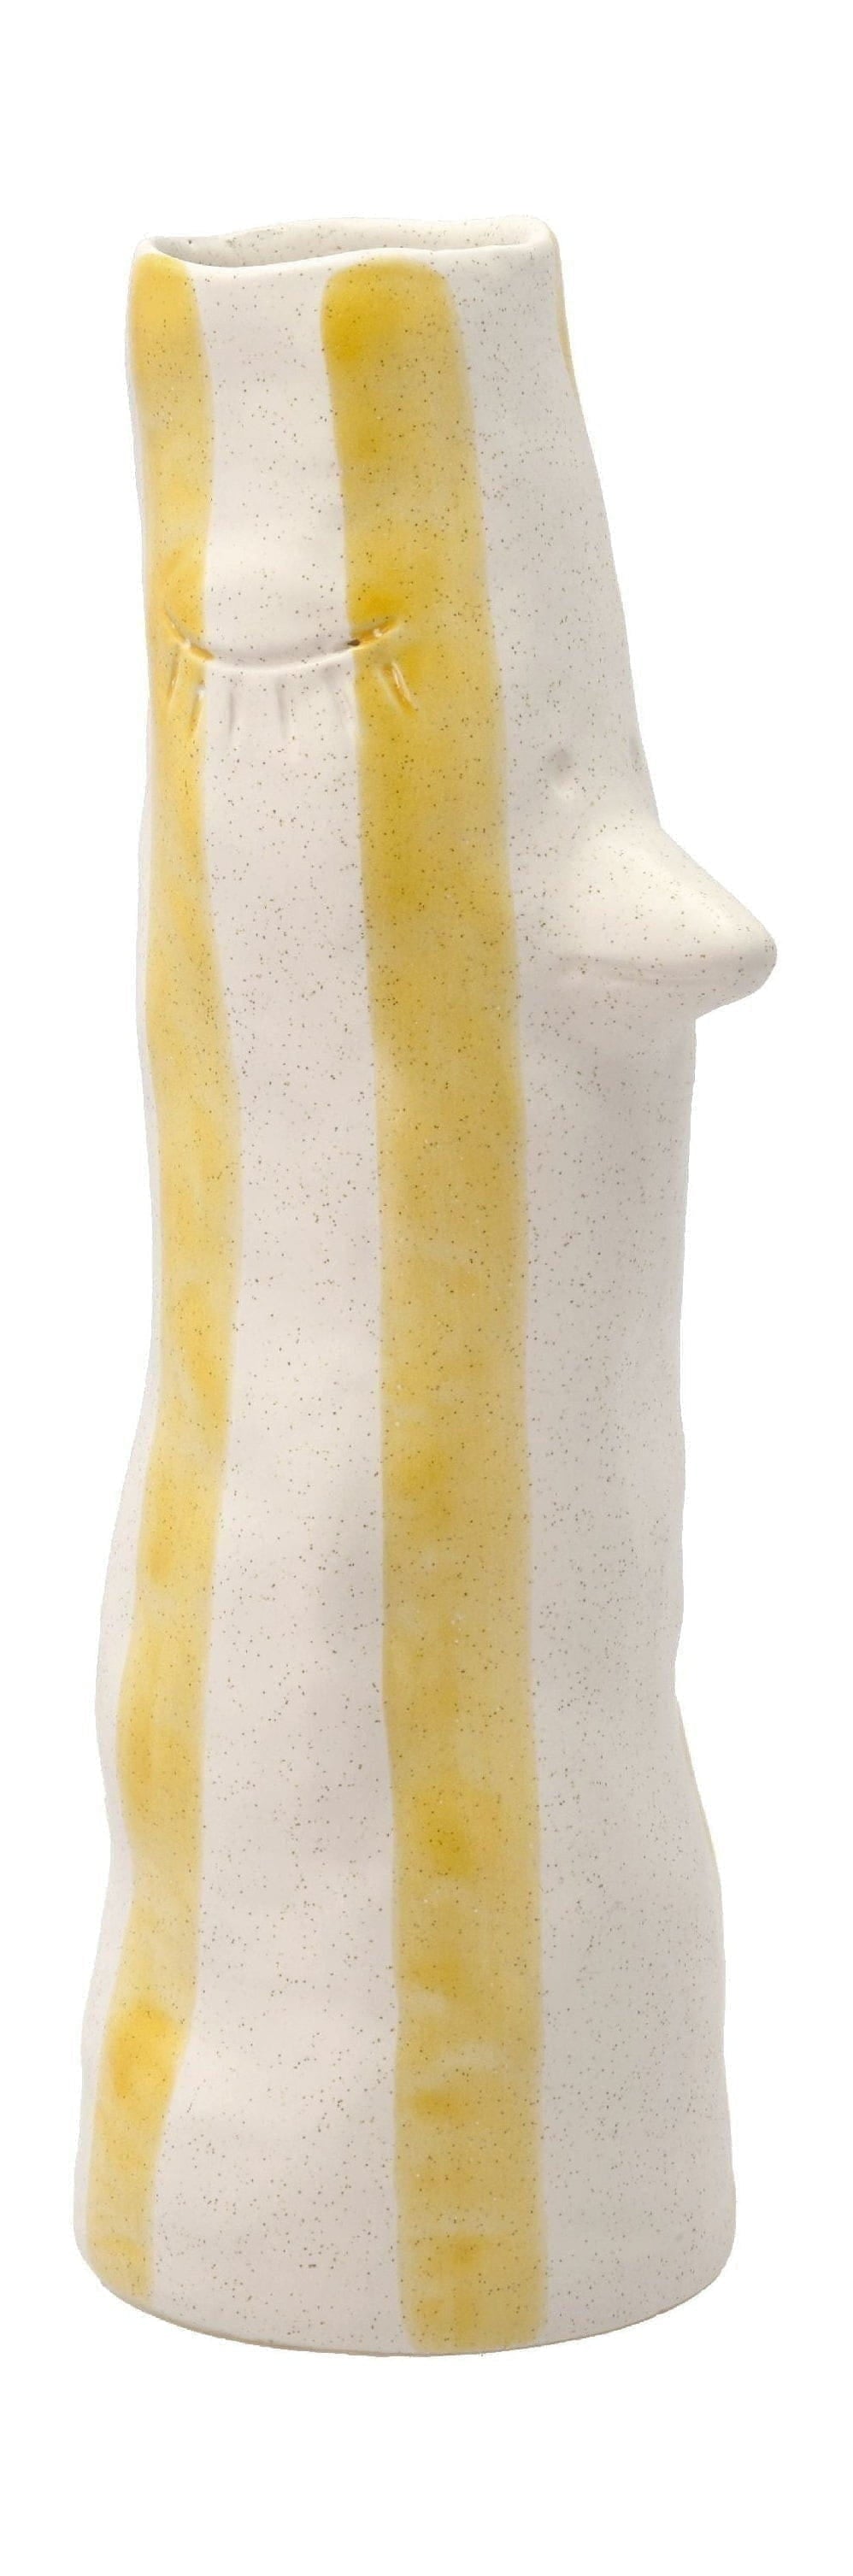 Villa -Kollektionsstil Vase mit Schnabel und Wimpern groß, gelb